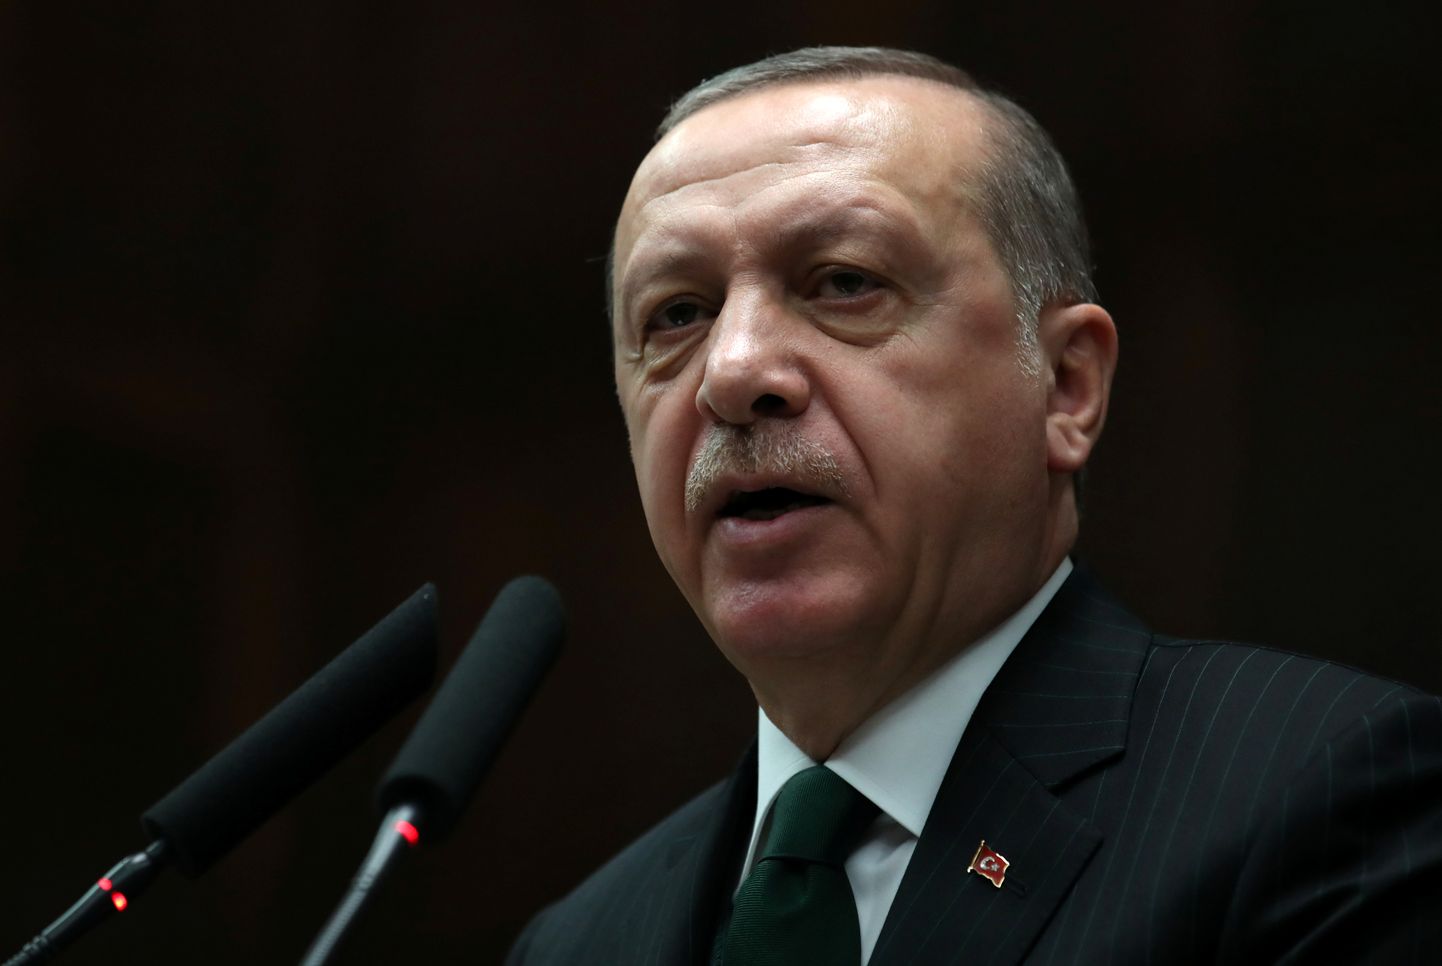 Türgi president Recep Tayyip Erdoğan